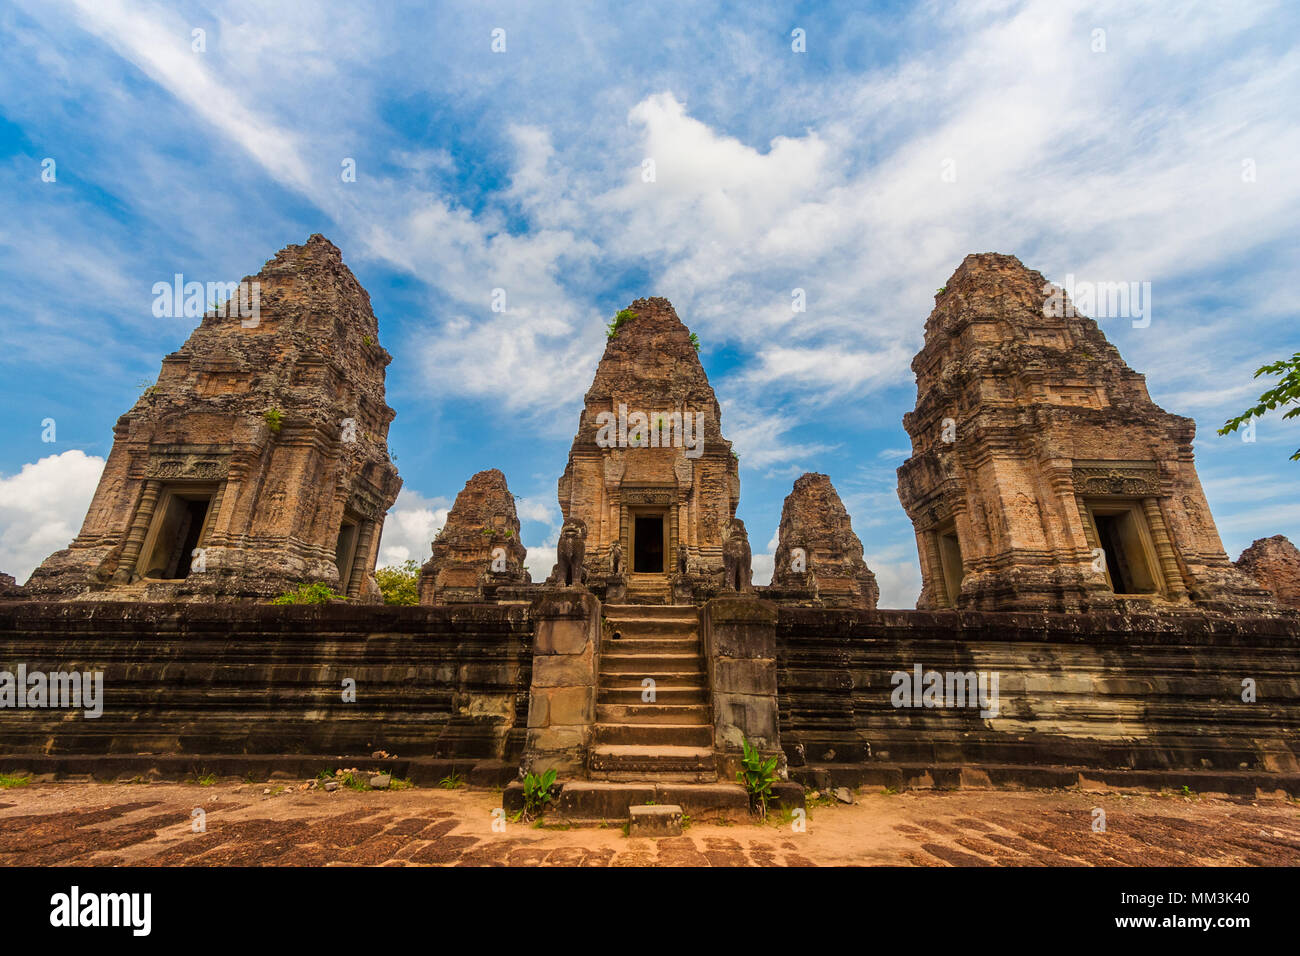 Grande vue de face du sanctuaire intérieur du Cambodge est Mebon temple. L'escalier l'entrée est gardée par deux statues de lion. Banque D'Images